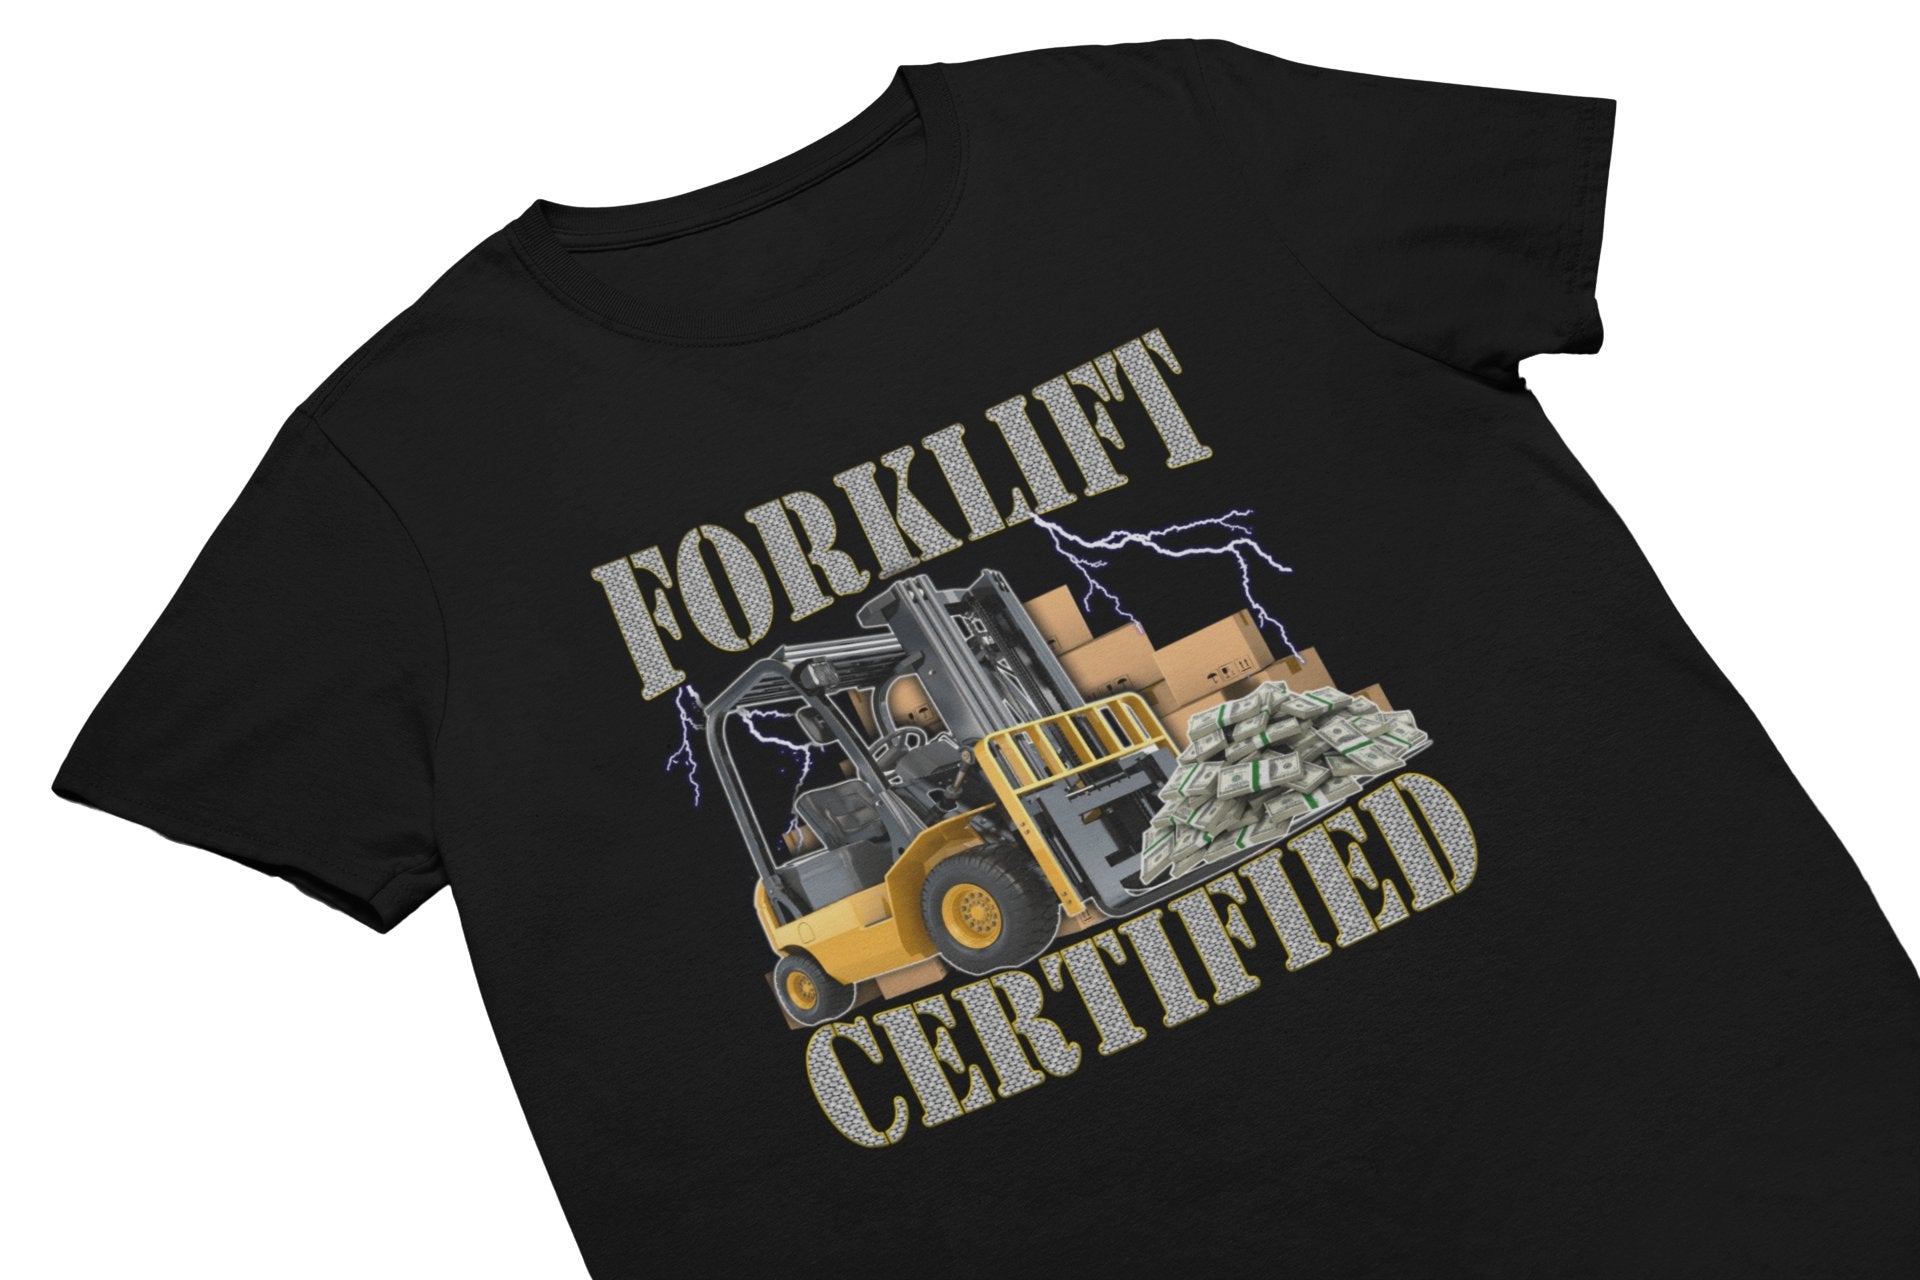 FORKLIFT CERTIFIED - HardShirts